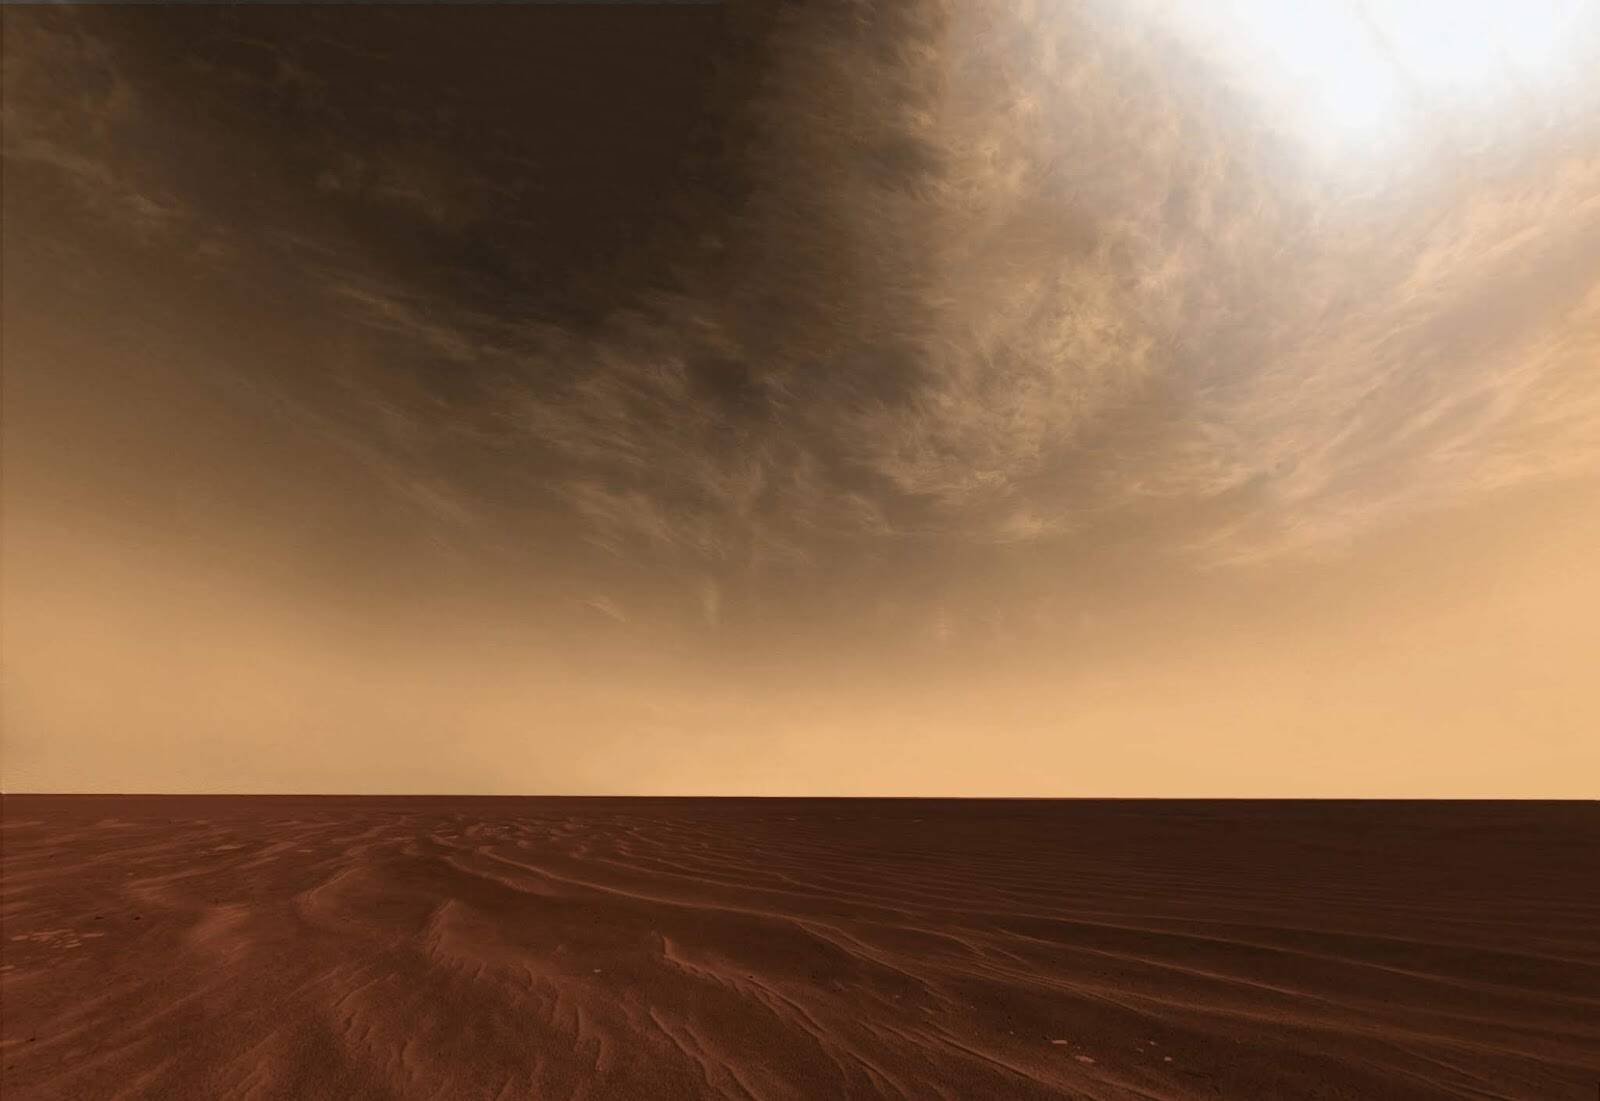 Immagine di Marte, Perseverance è incappato già in oltre 300 vortici di sabbia